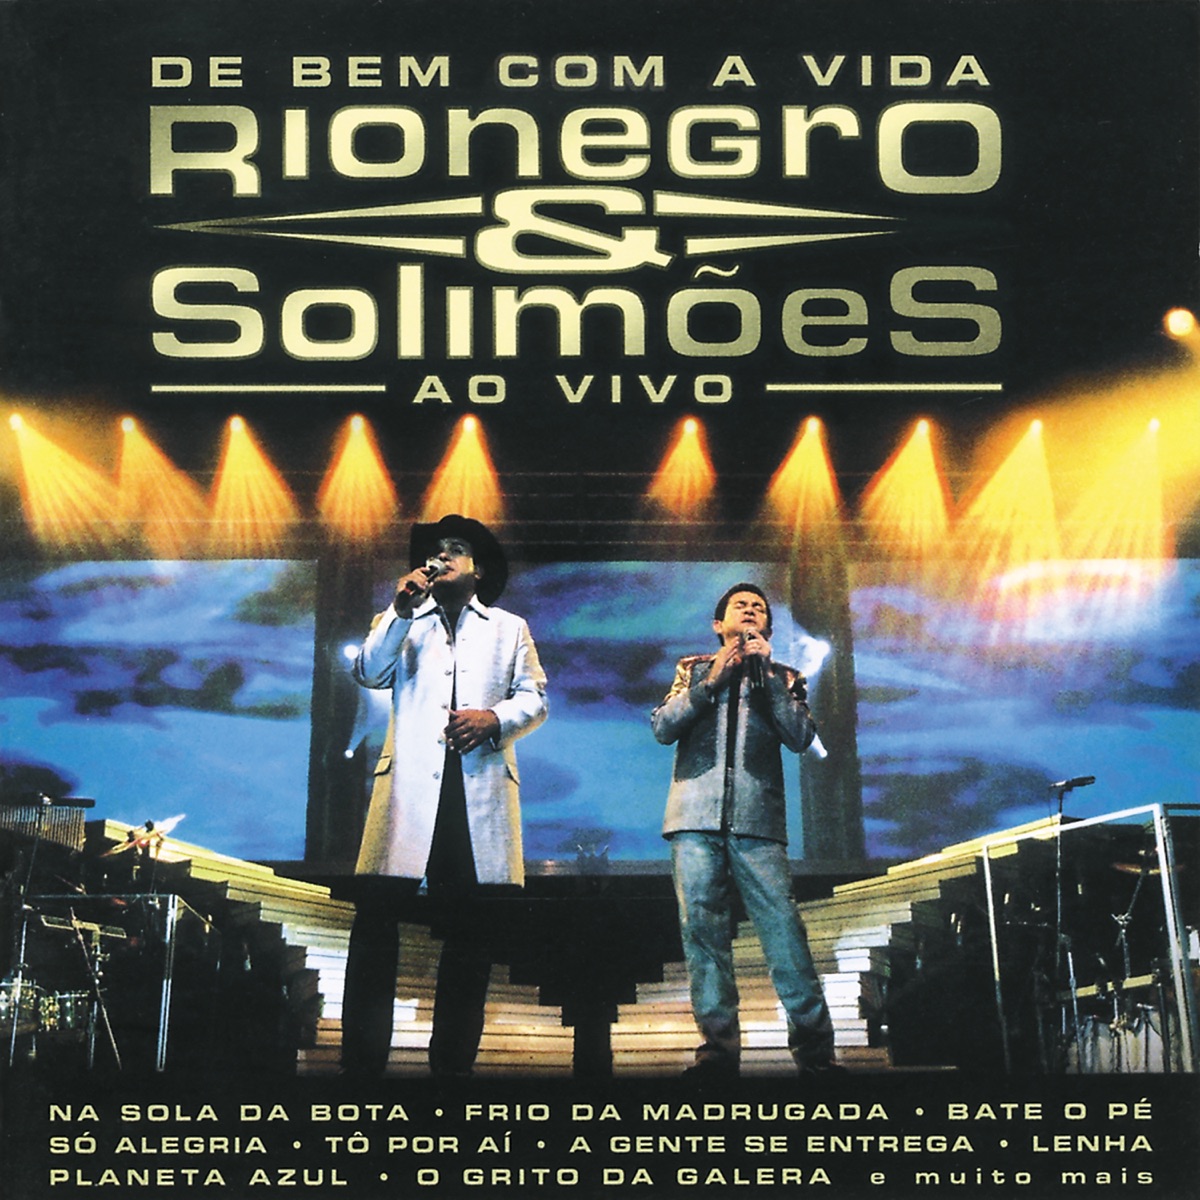 Peão Apaixonado” álbum de Rionegro & Solimões en Apple Music